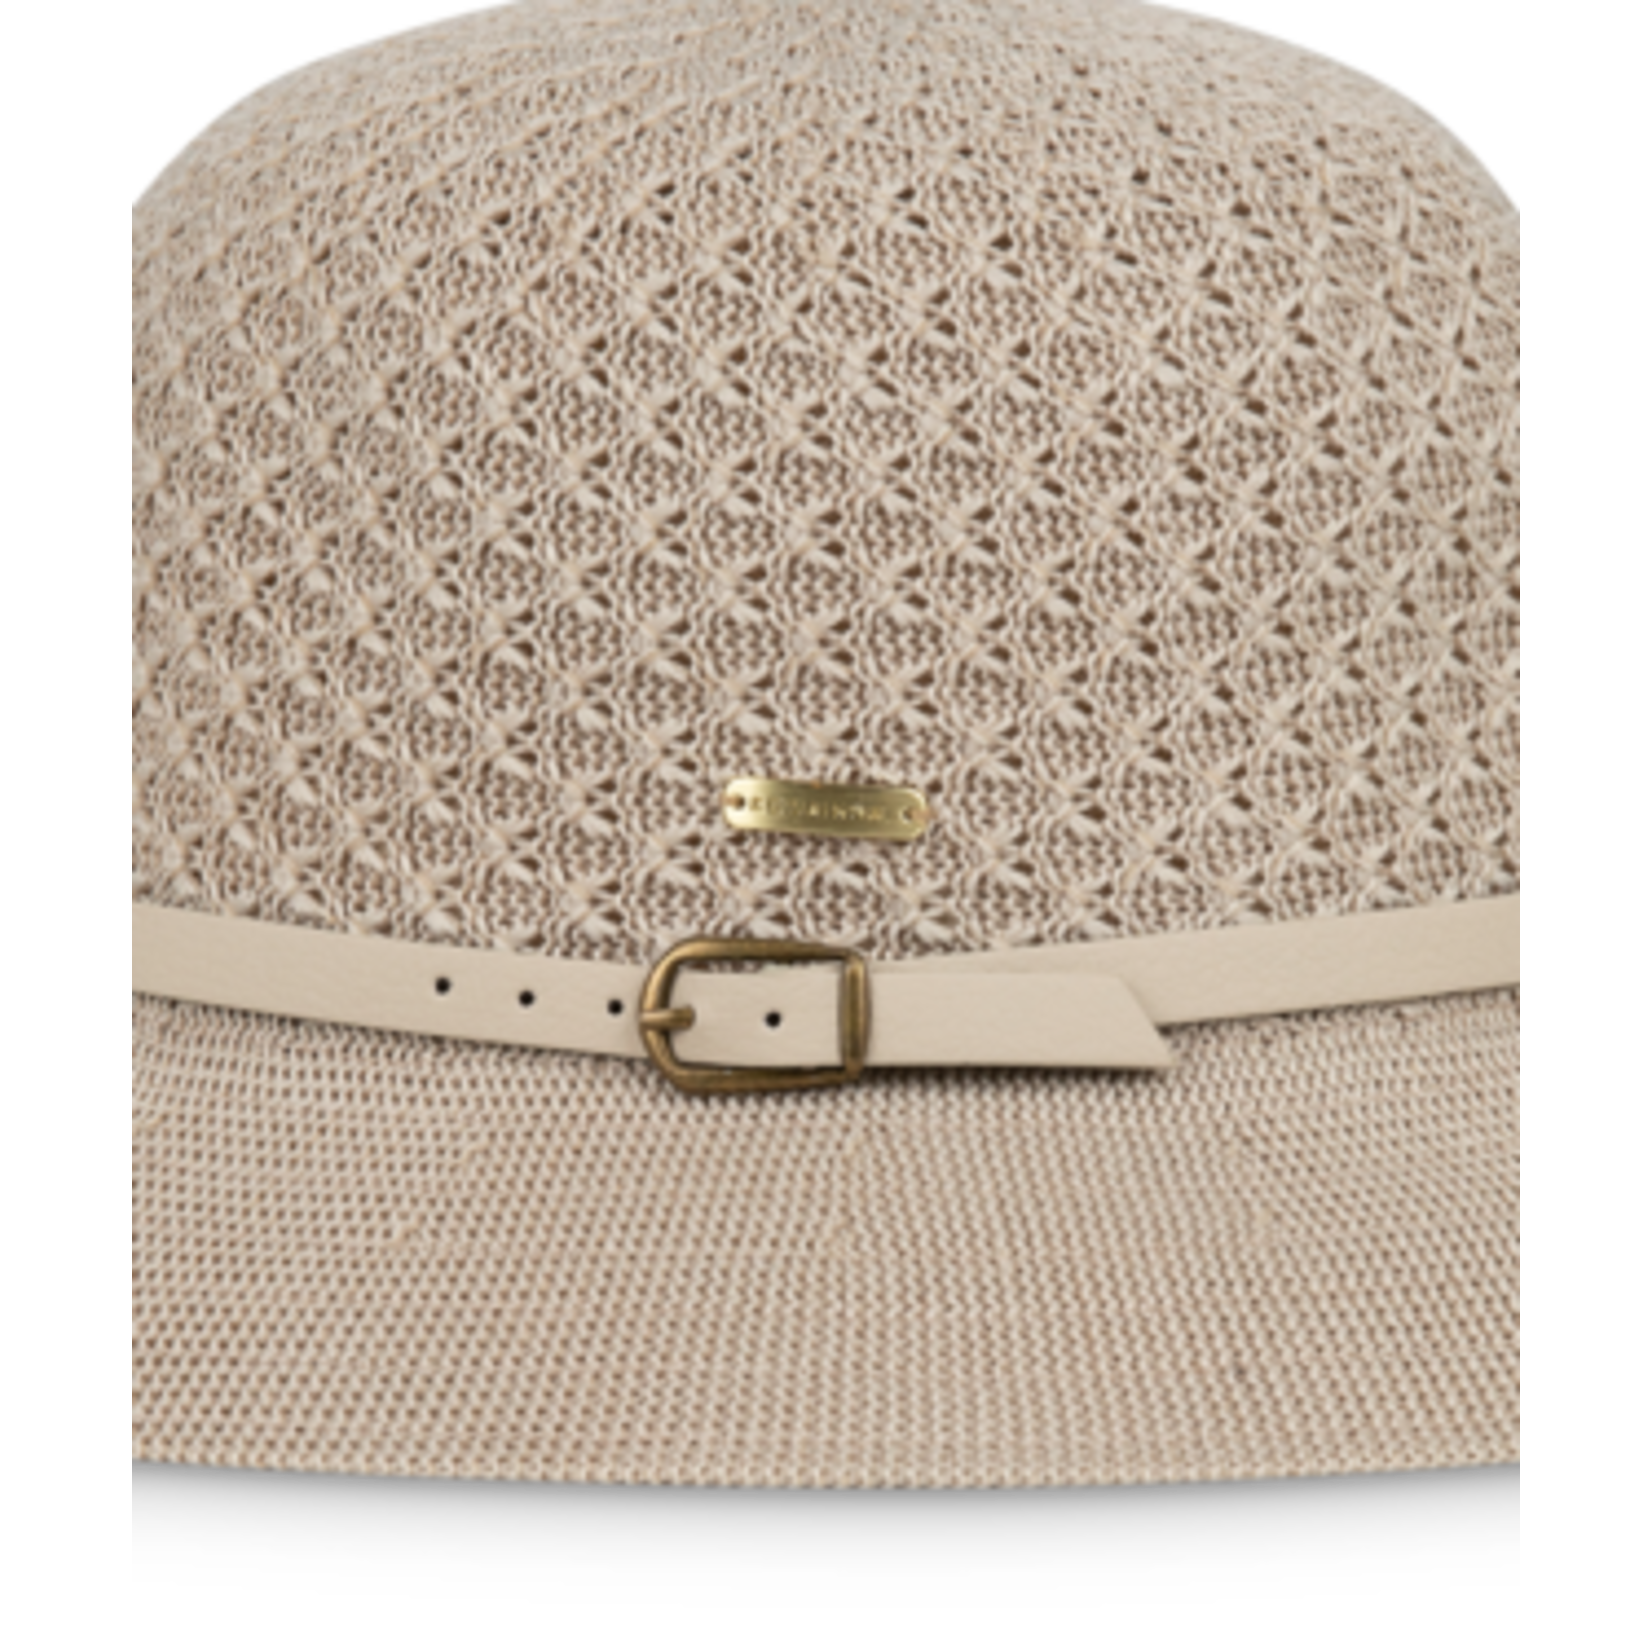 Women's Short Brim Taupe Bucket Hat - Cassie